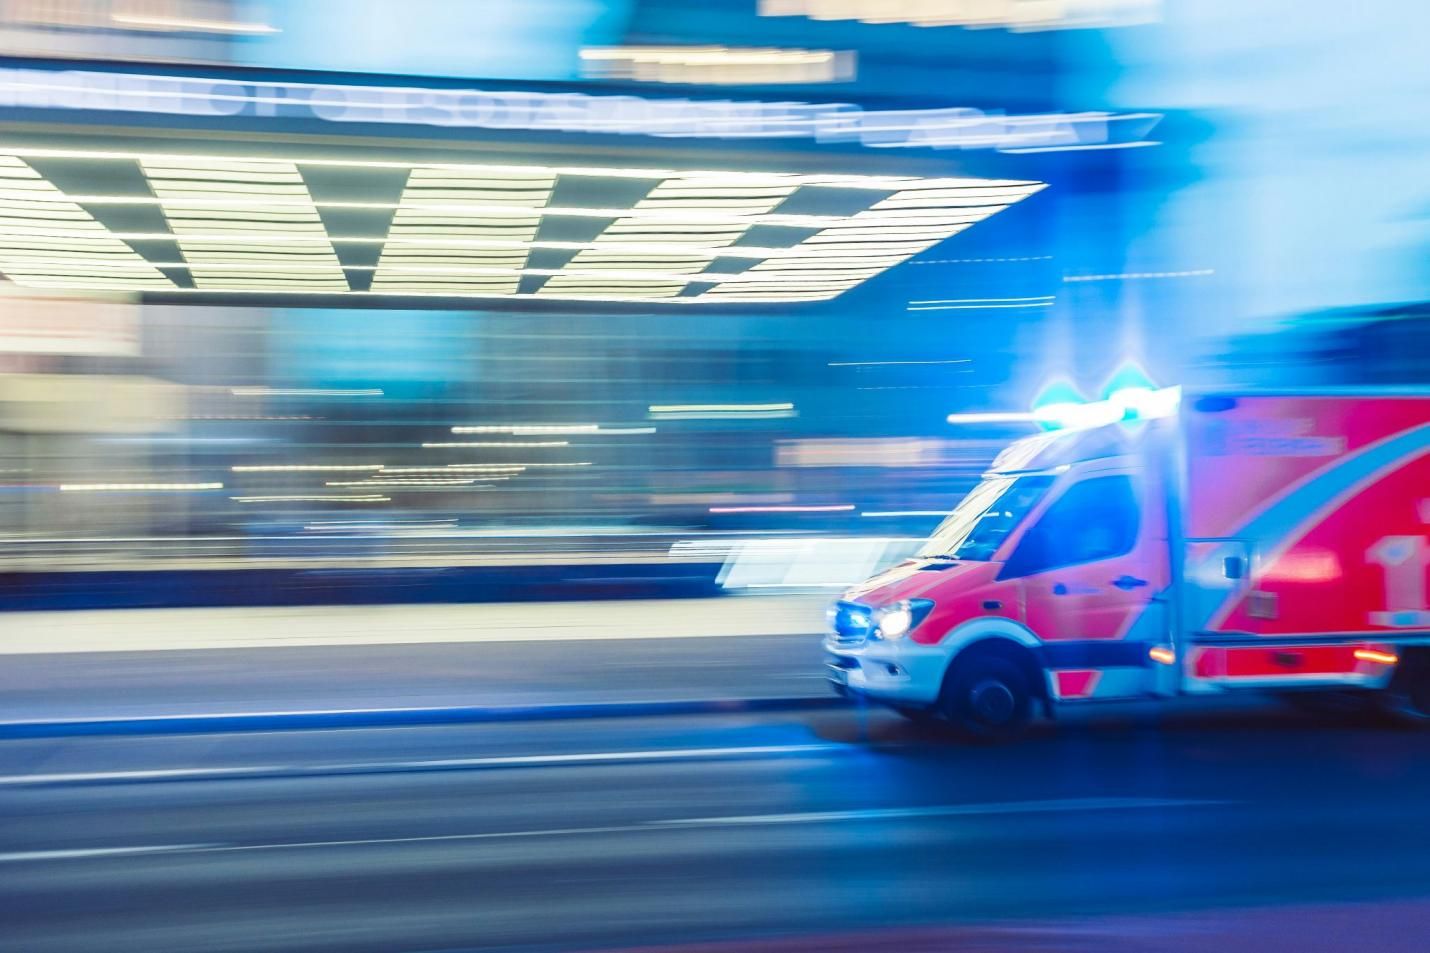 Les 5 meilleurs sons de sirène d'ambulance pour vos diffusions en direct et podcasts